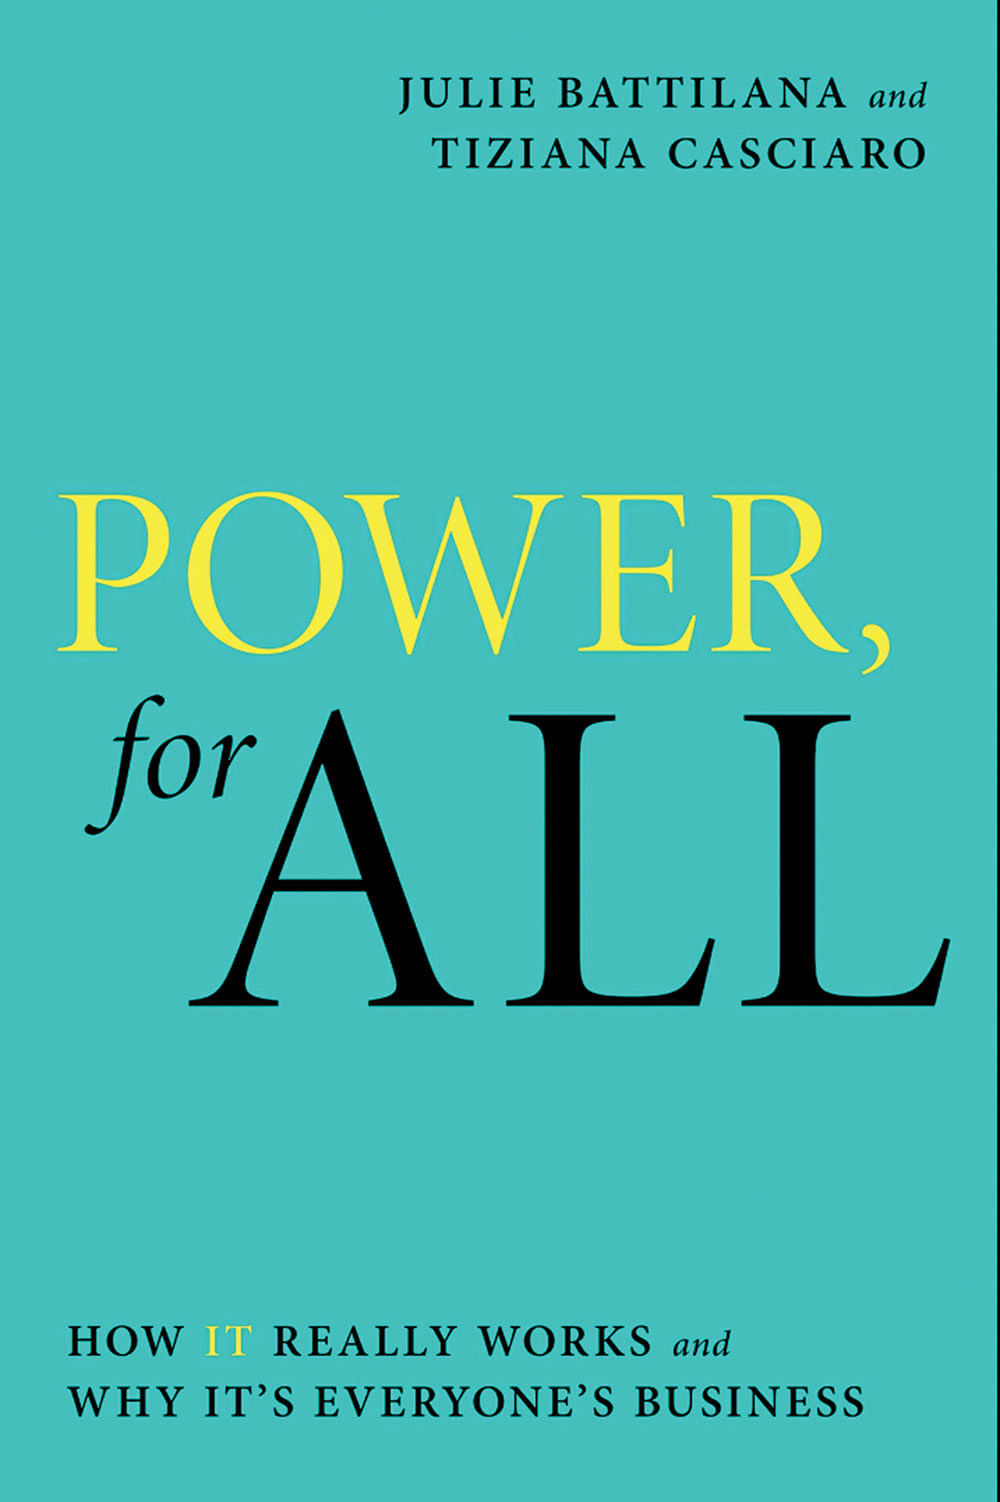 புத்தகத்தின் பெயர்:
Power, 
For All
ஆசிரியர்:
Tiziana Casciaro, 
Julie Battilana
பதிப்பாளர்:
Simon & Schuster